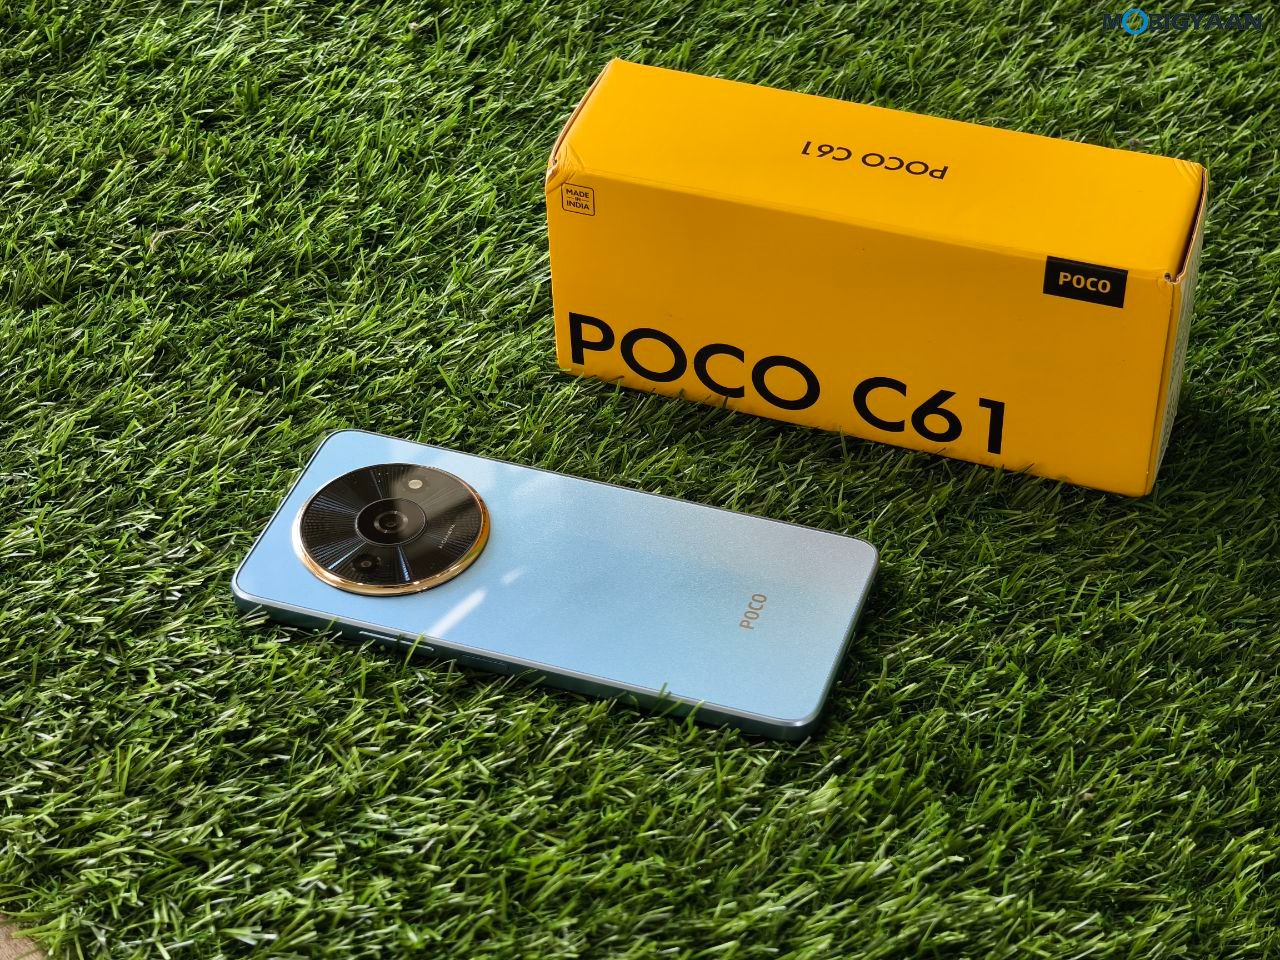 POCO C61 Review Design Display Cameras Build Quality 15